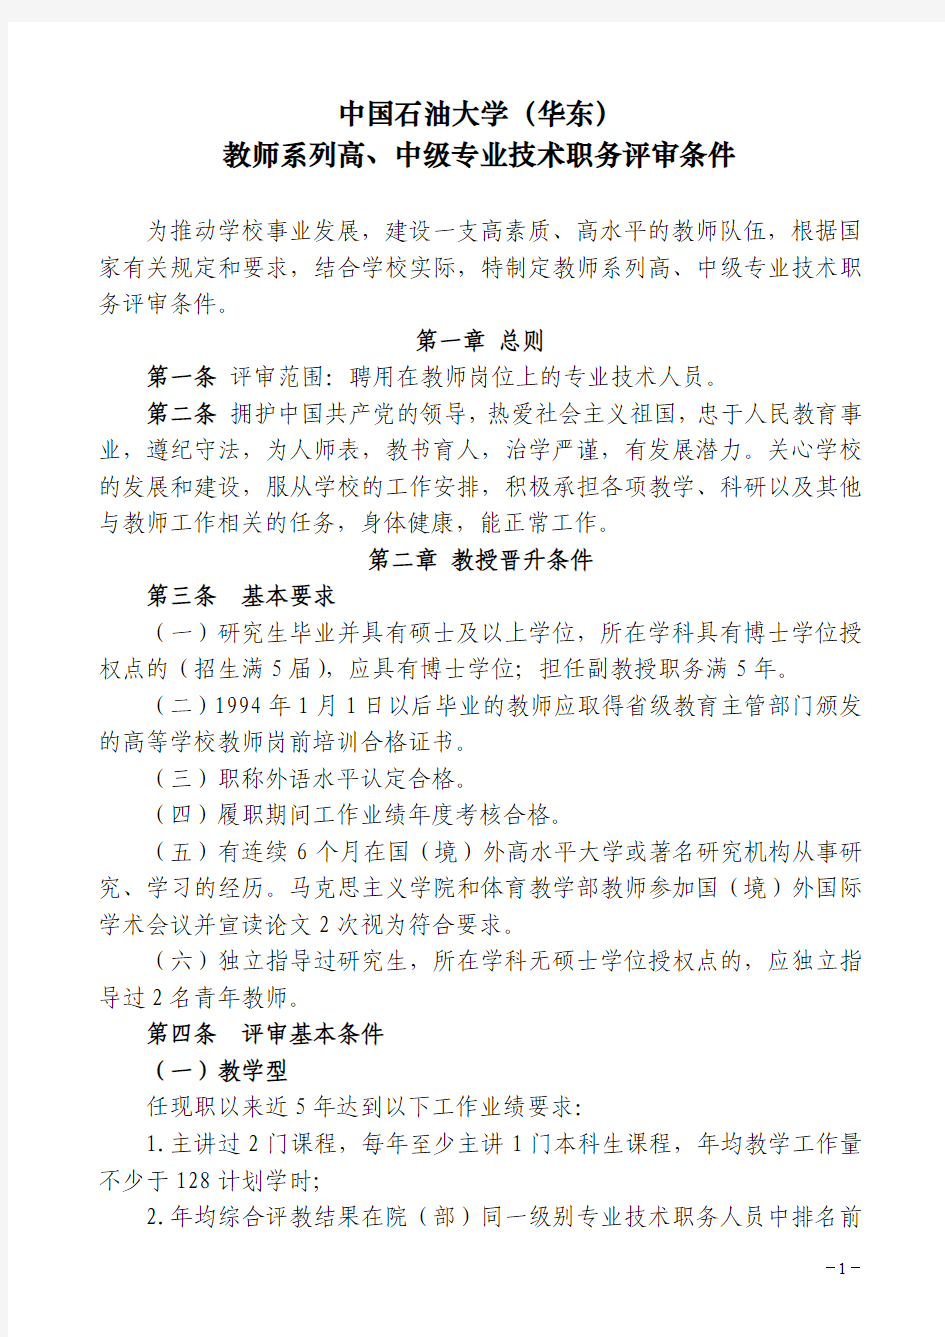 中国石油大学(华东)教师系列高、中级专业技术职务评审条件(2013.11.13)